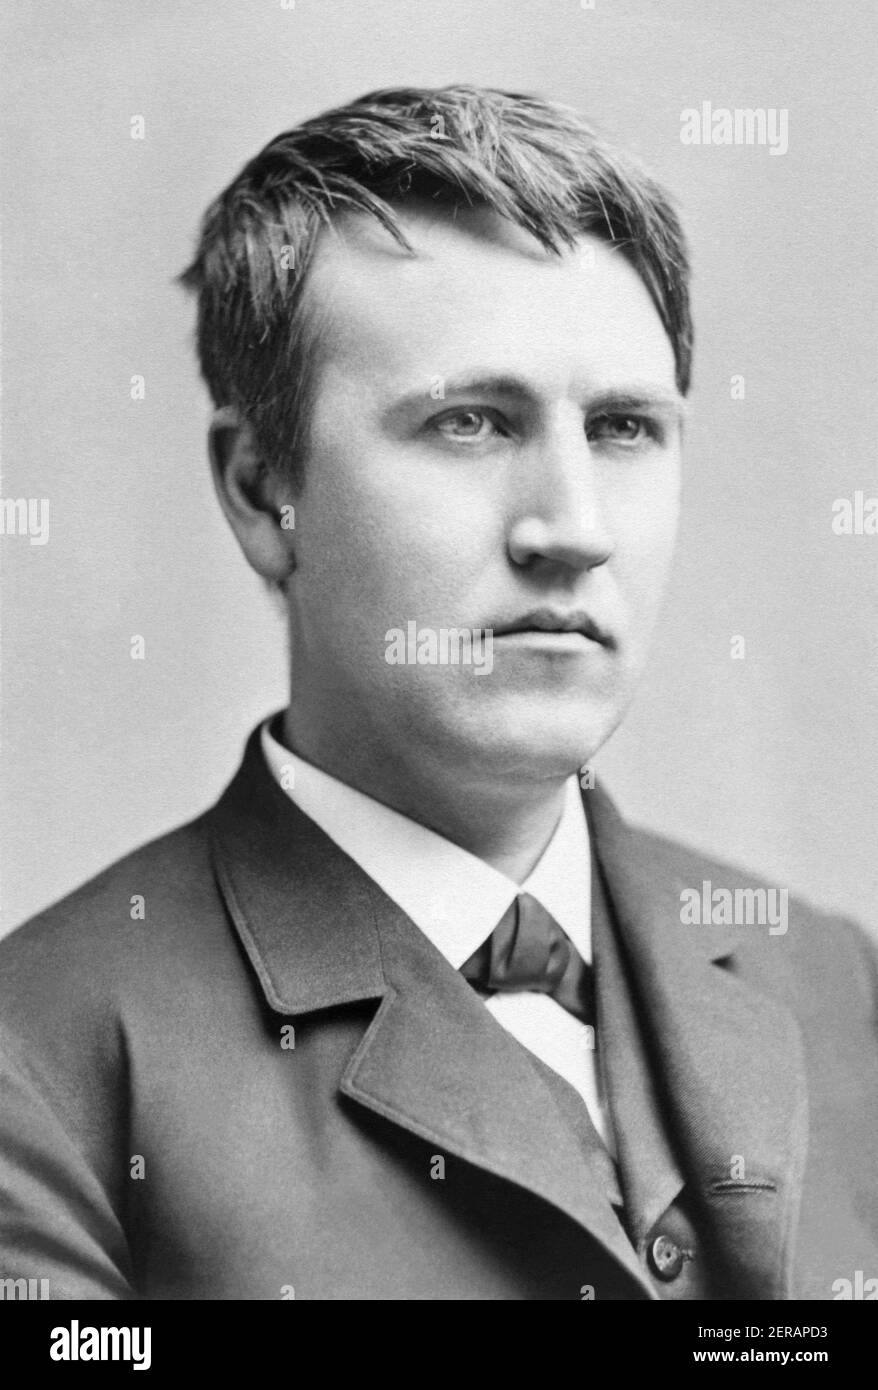 Der junge Thomas Alva Edison (1847–1931), amerikanischer Erfinder und Geschäftsmann, der als Amerikas größter Erfinder beschrieben wurde, wurde in einem Porträt von 1870 porträtiert. Stockfoto